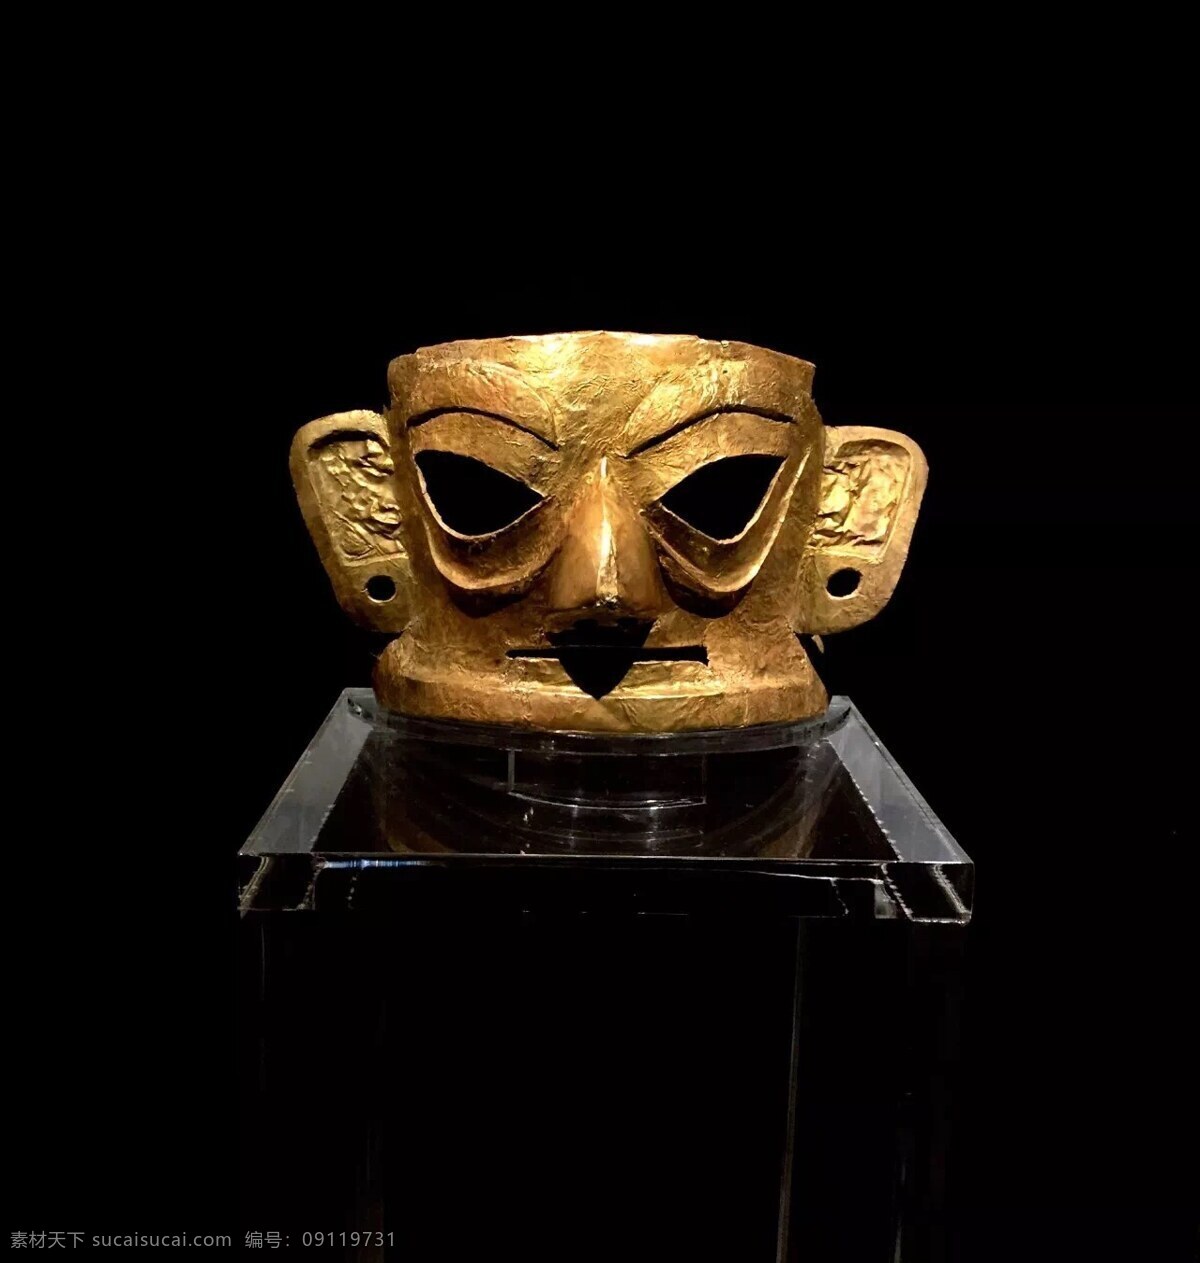 成都 金沙面具 金沙博物馆 三星堆 面具 古蜀国 文化艺术 传统文化